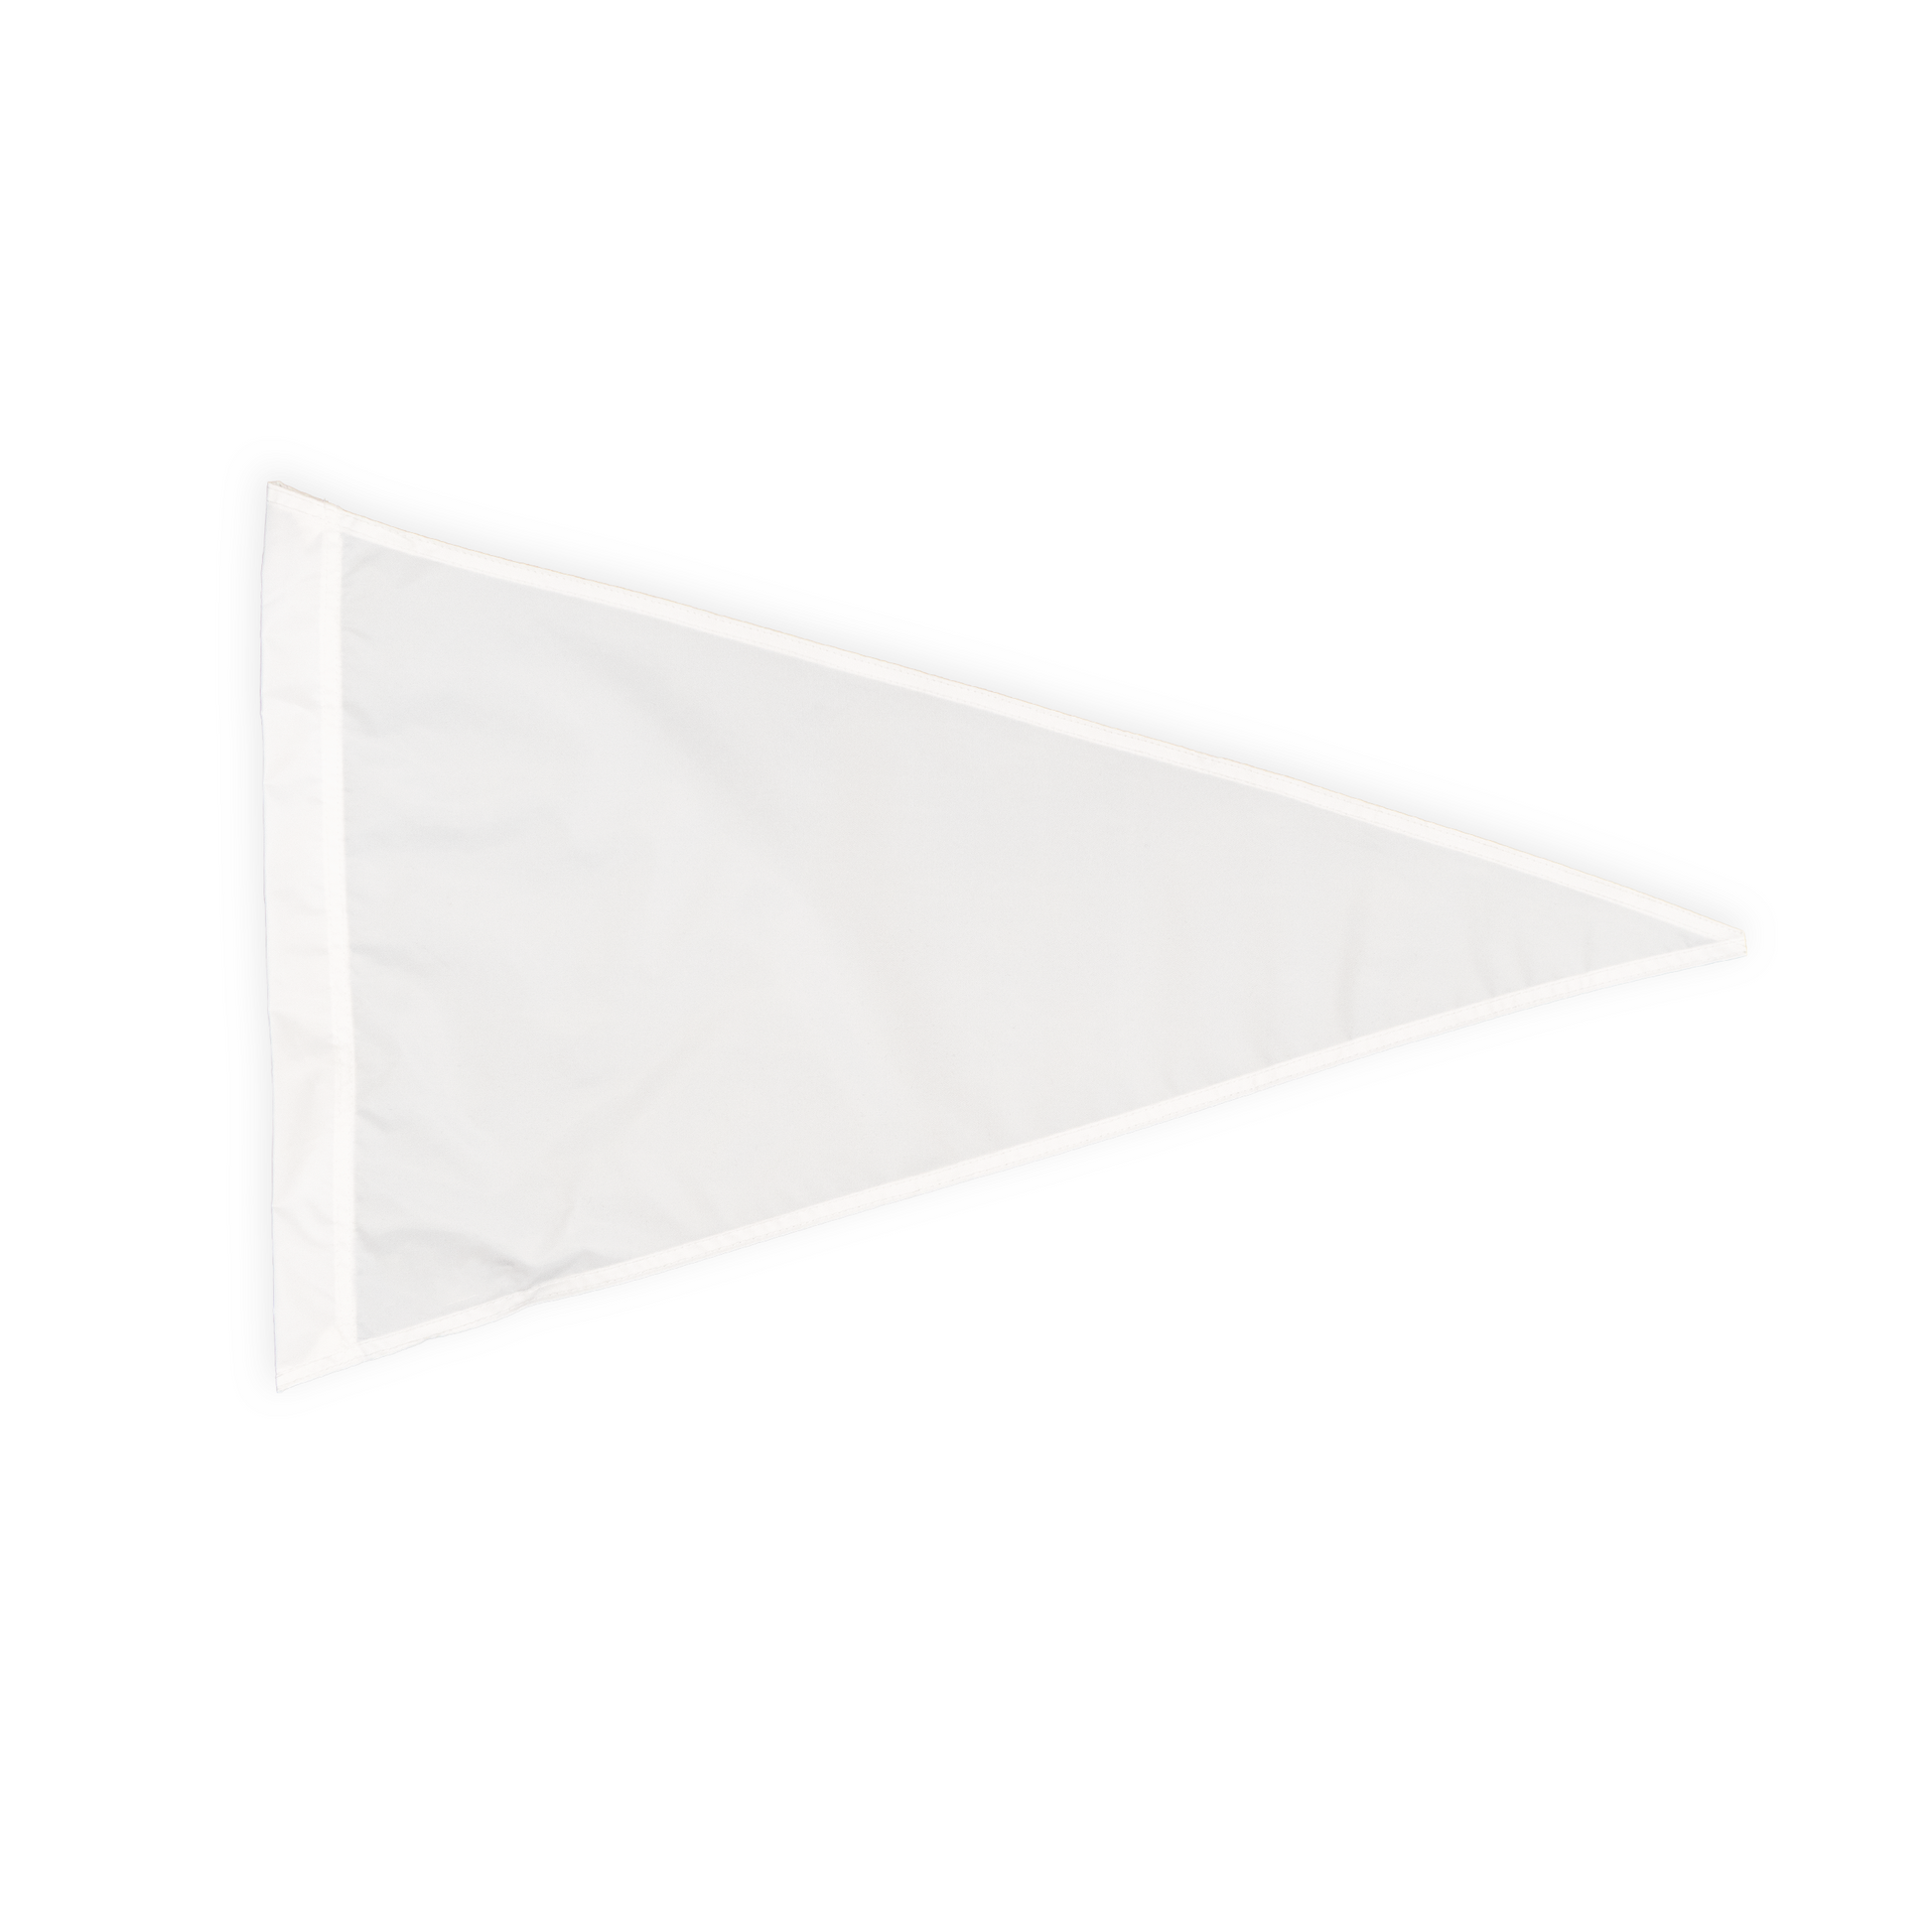 Nylon Flag Flag Solid White 